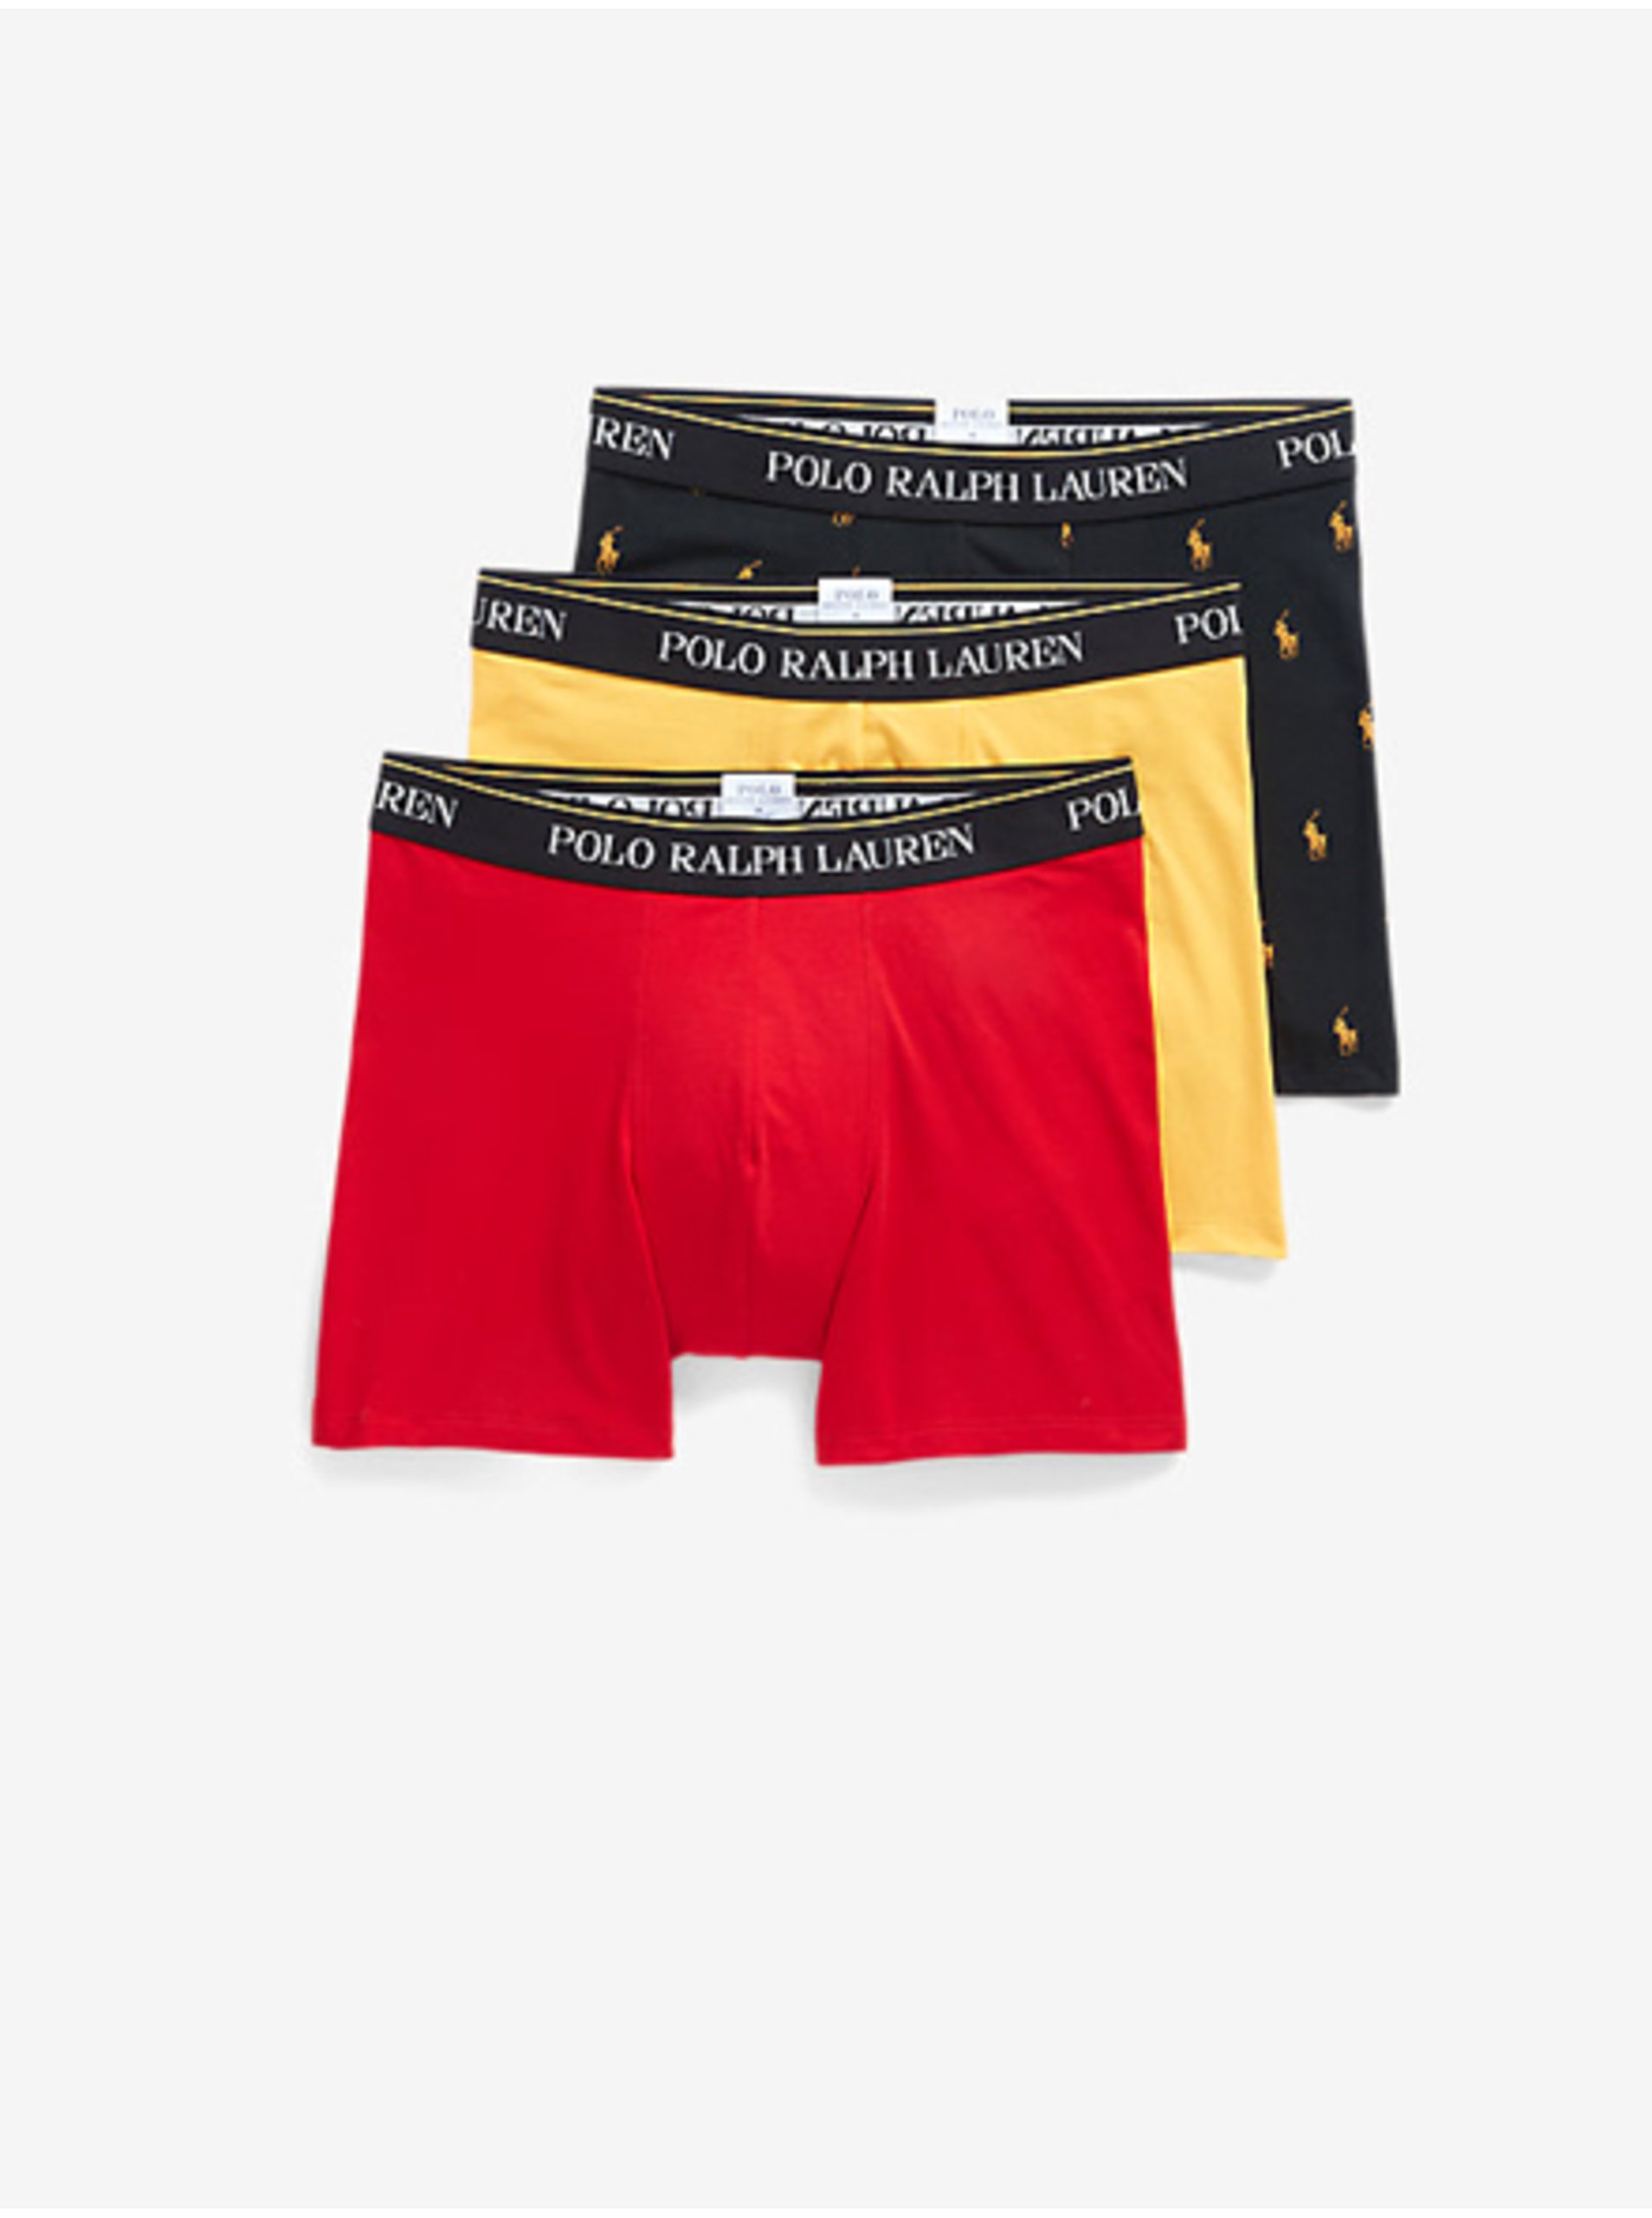 Lacno Boxerky pre mužov POLO Ralph Lauren - červená, žltá, čierna